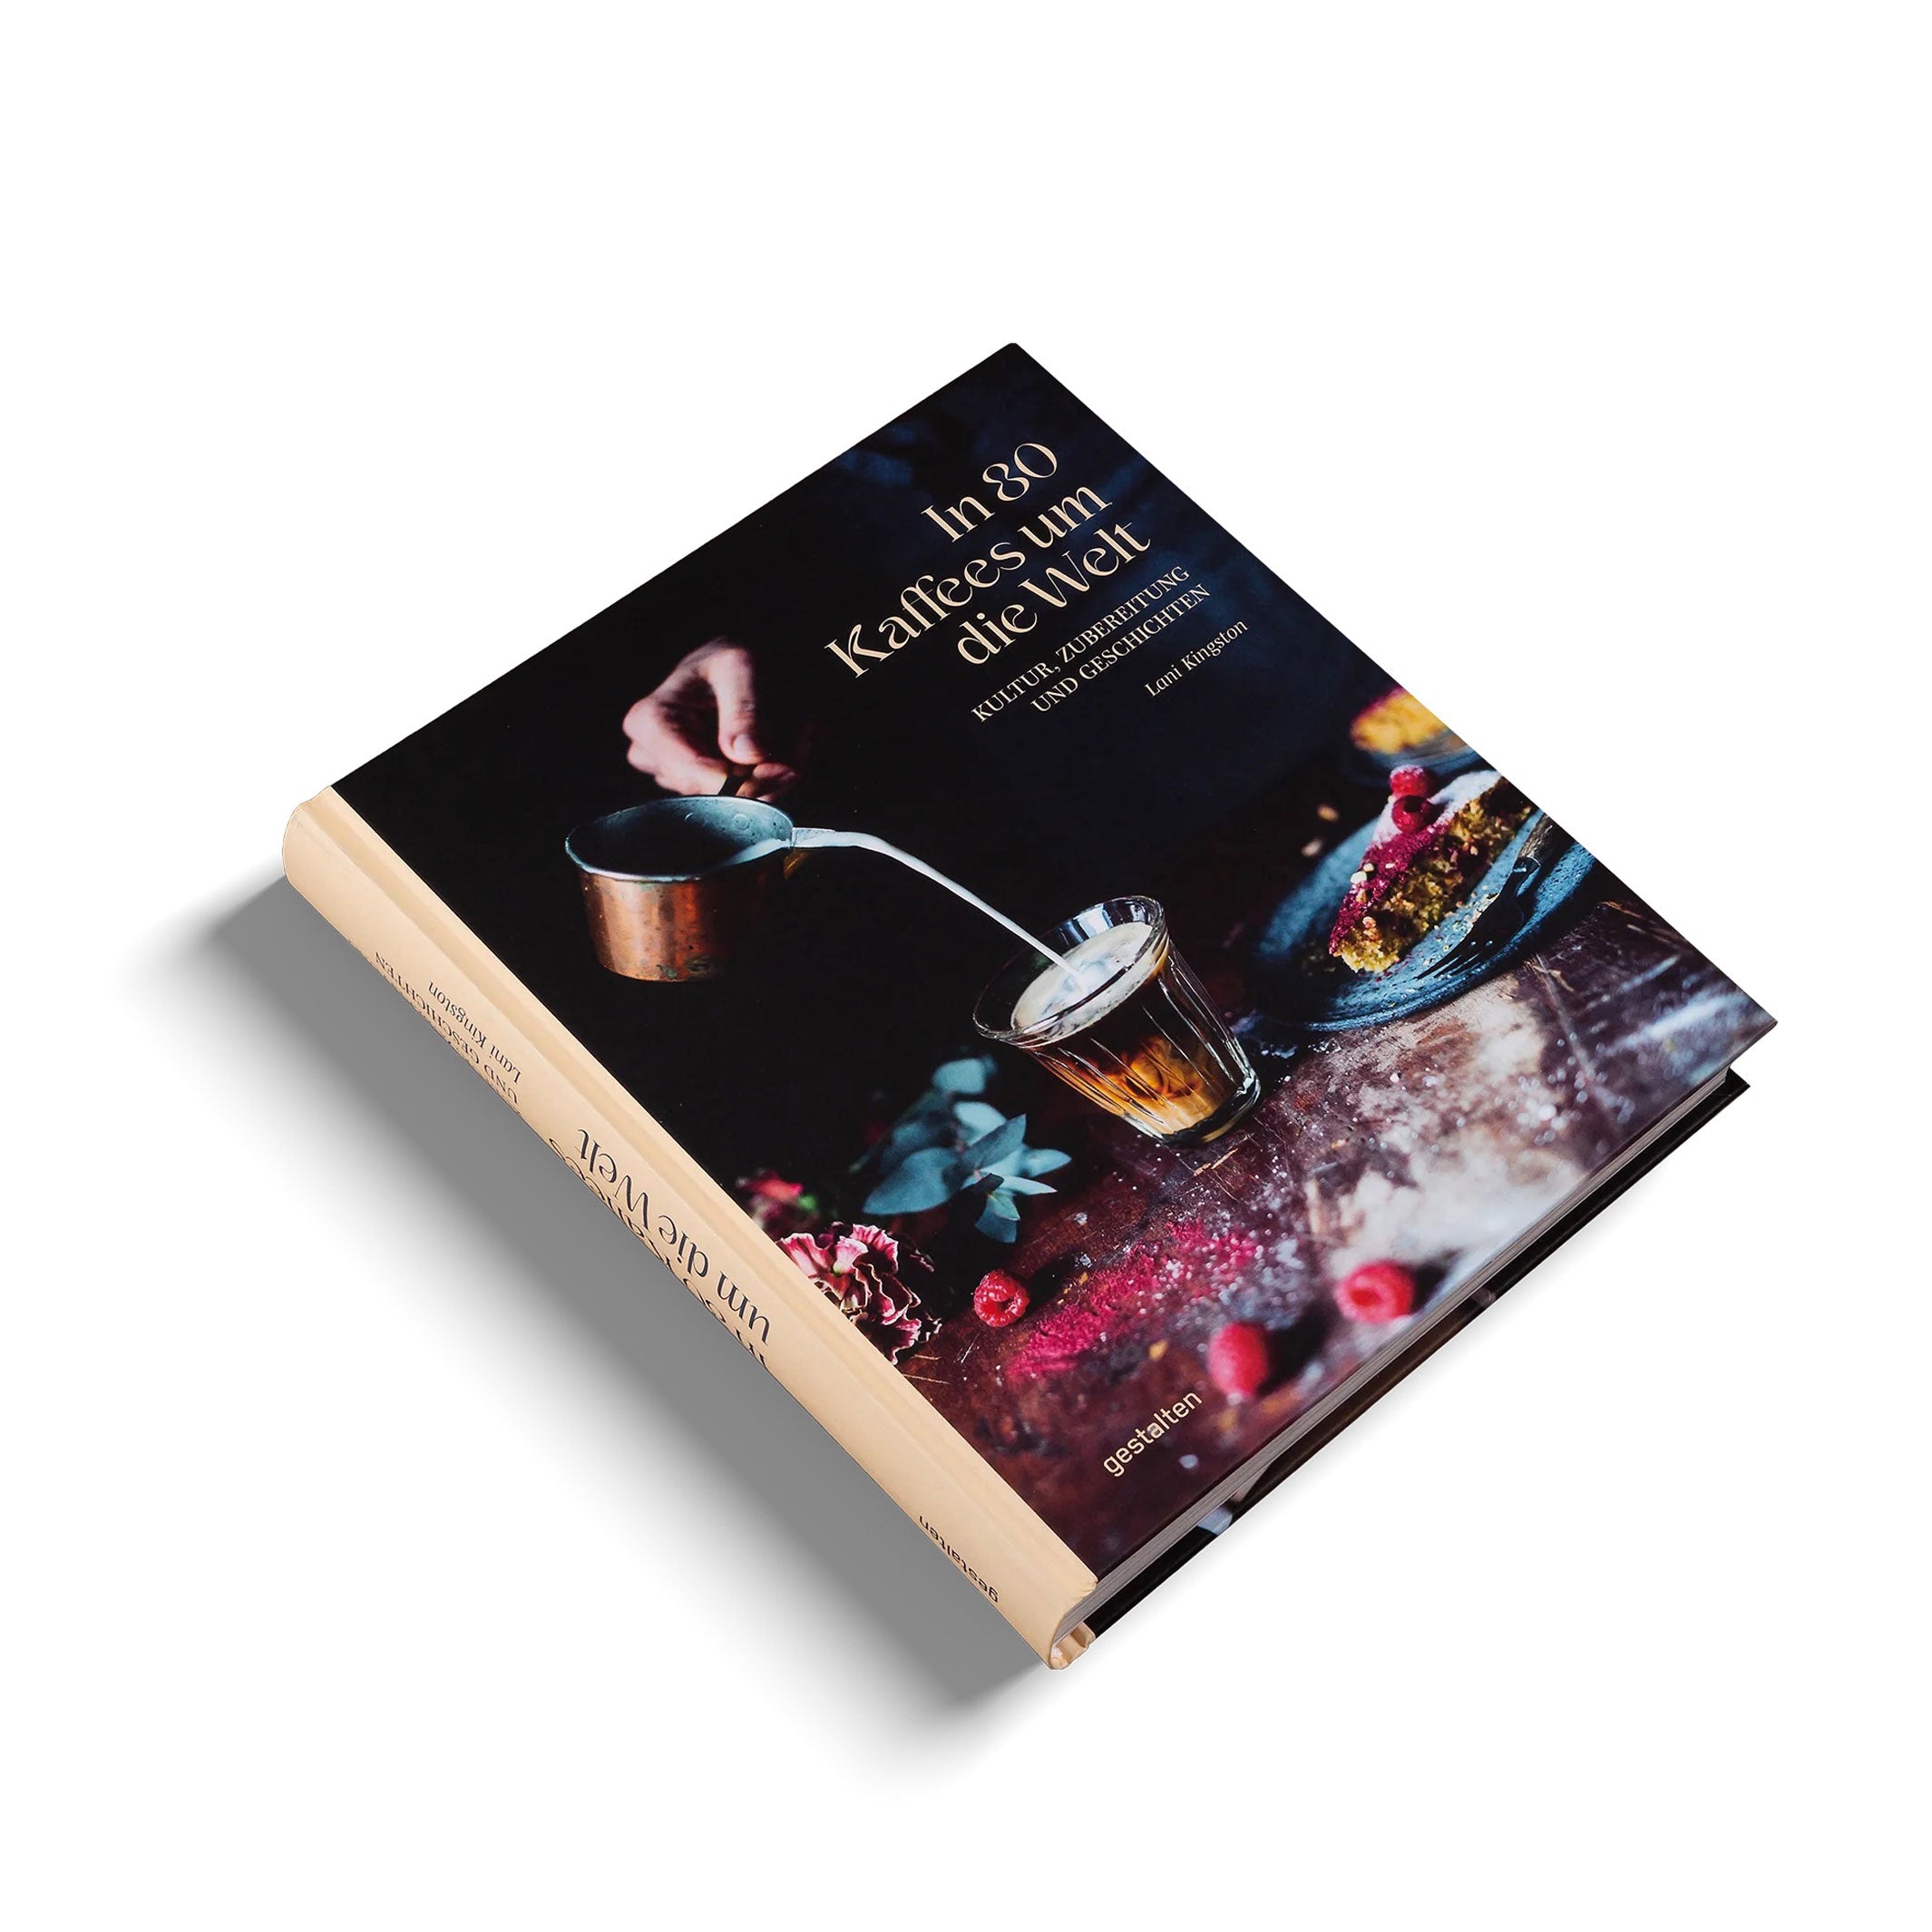 IN 80 KAFFEES UM DIE WELT | Coffee BOOK | Lani Kingston | German | Gestalten Verlag